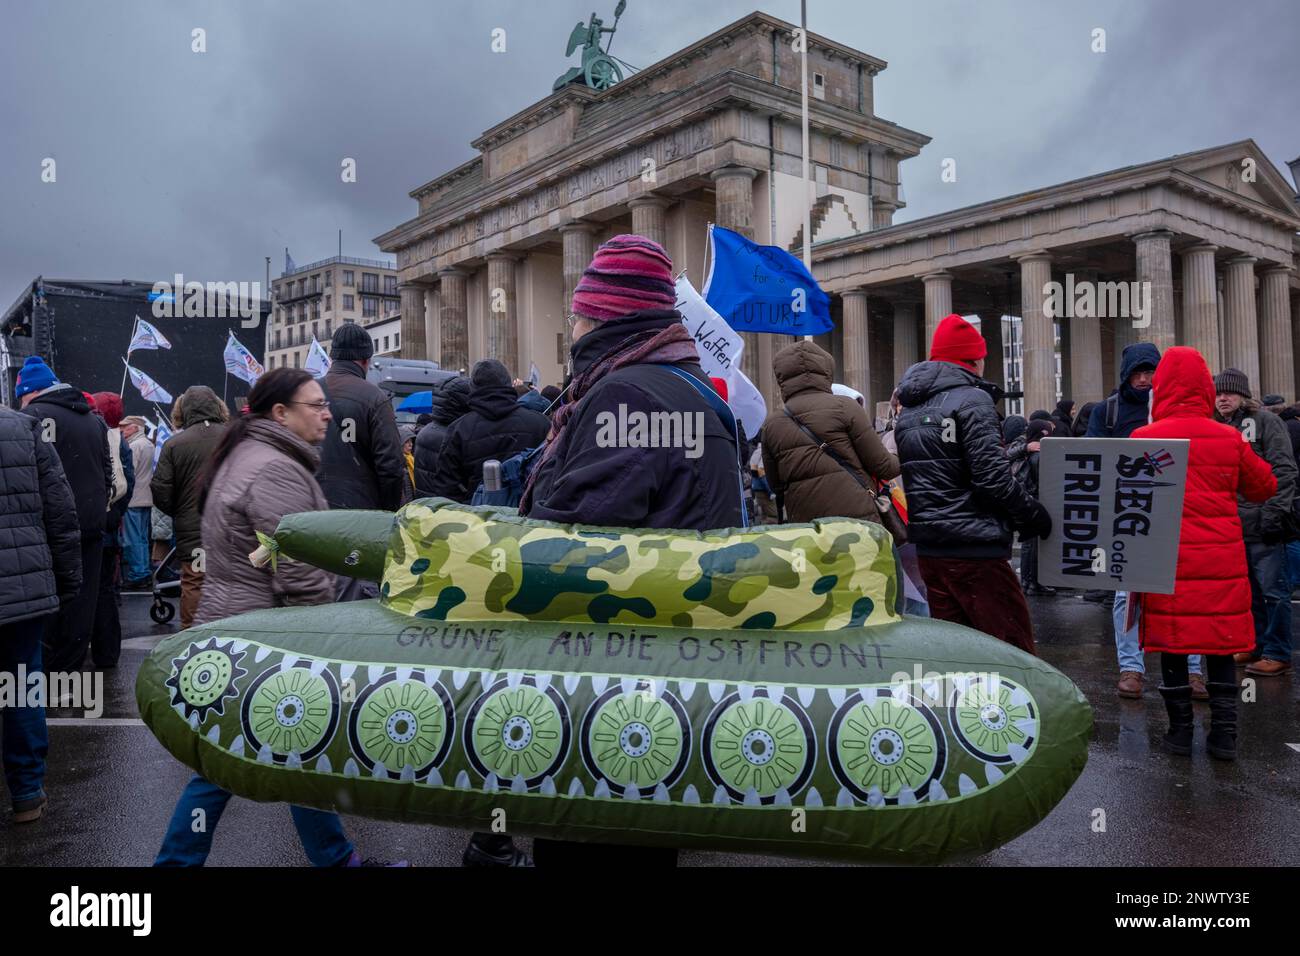 Grüne an die Ostfront, Deutschland, Berlin, 25.02.2023, Rallye vor dem Brandenburger Tor Stockfoto